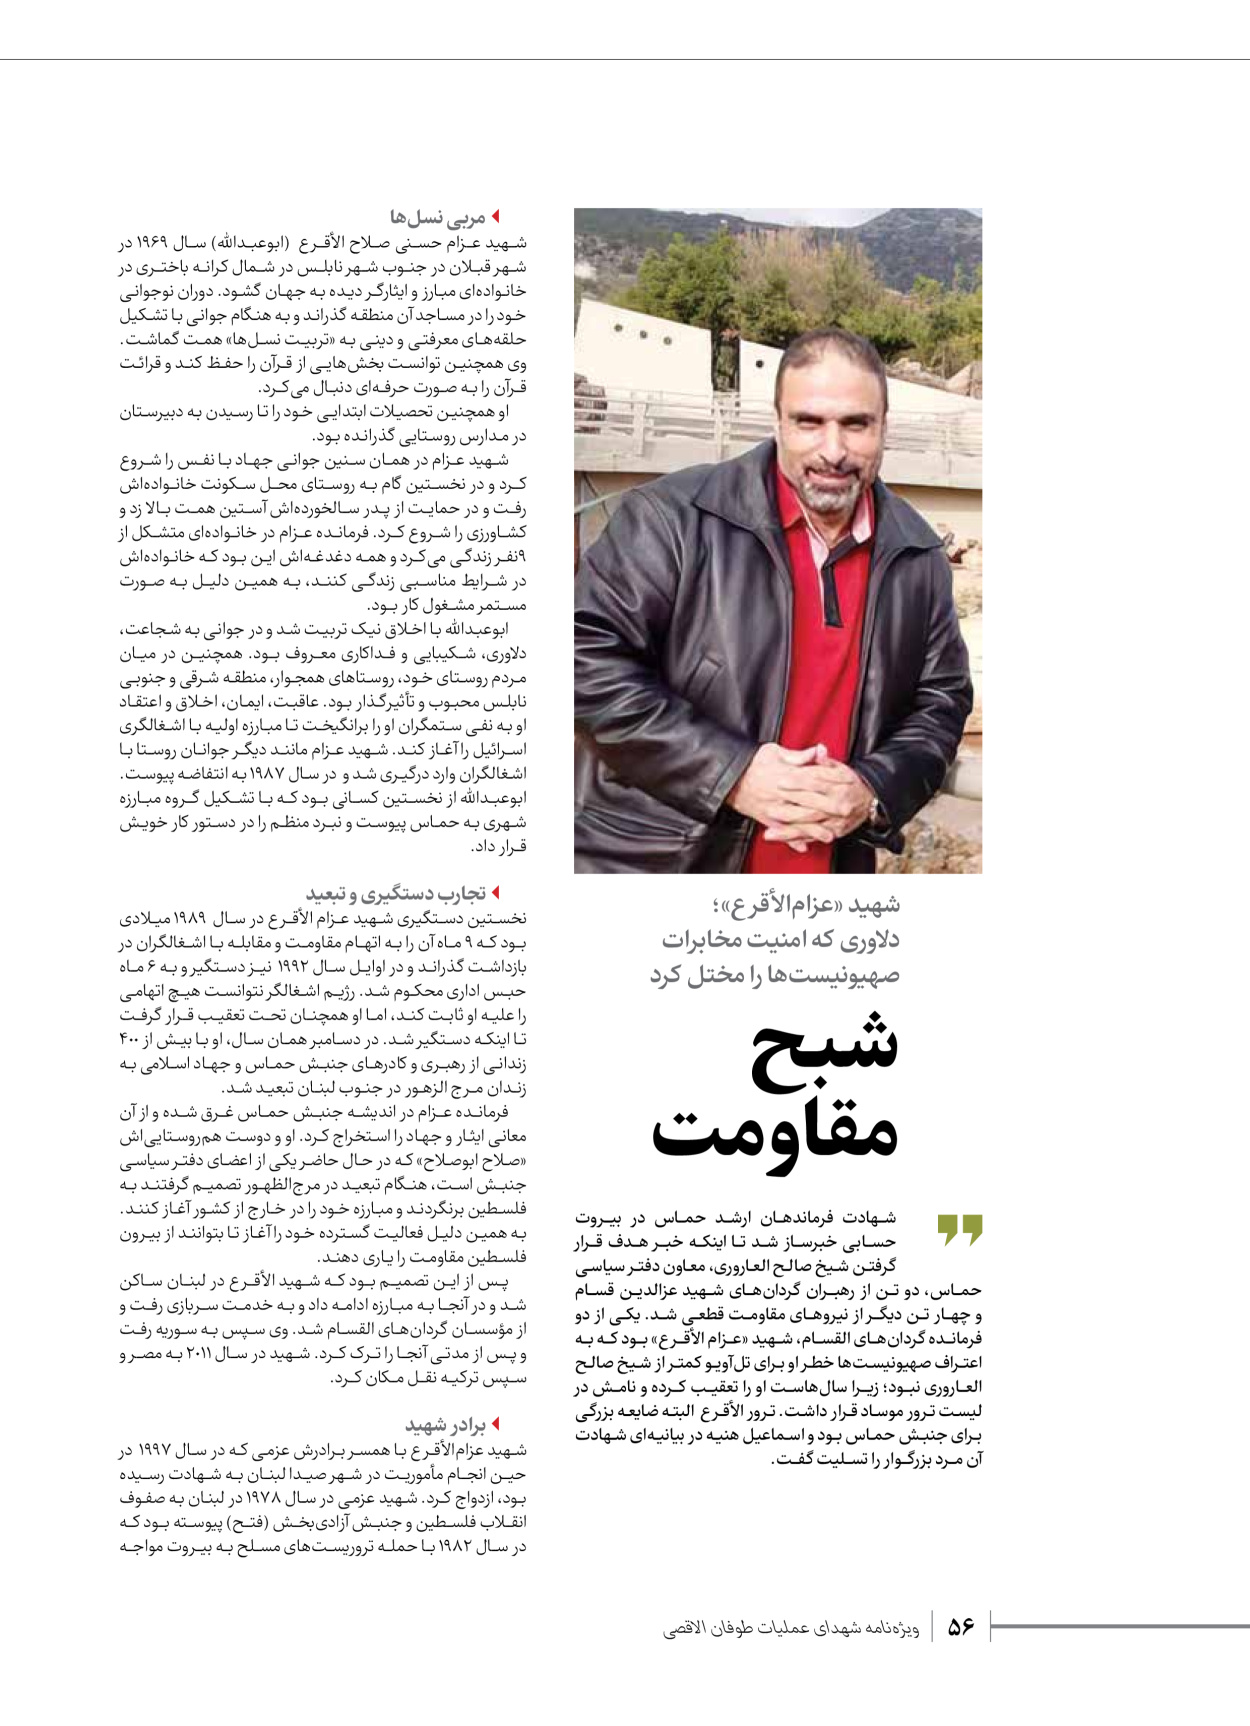 روزنامه ایران - ویژه نامه شهدای قدس ۳ - ۱۴ بهمن ۱۴۰۲ - صفحه ۵۶